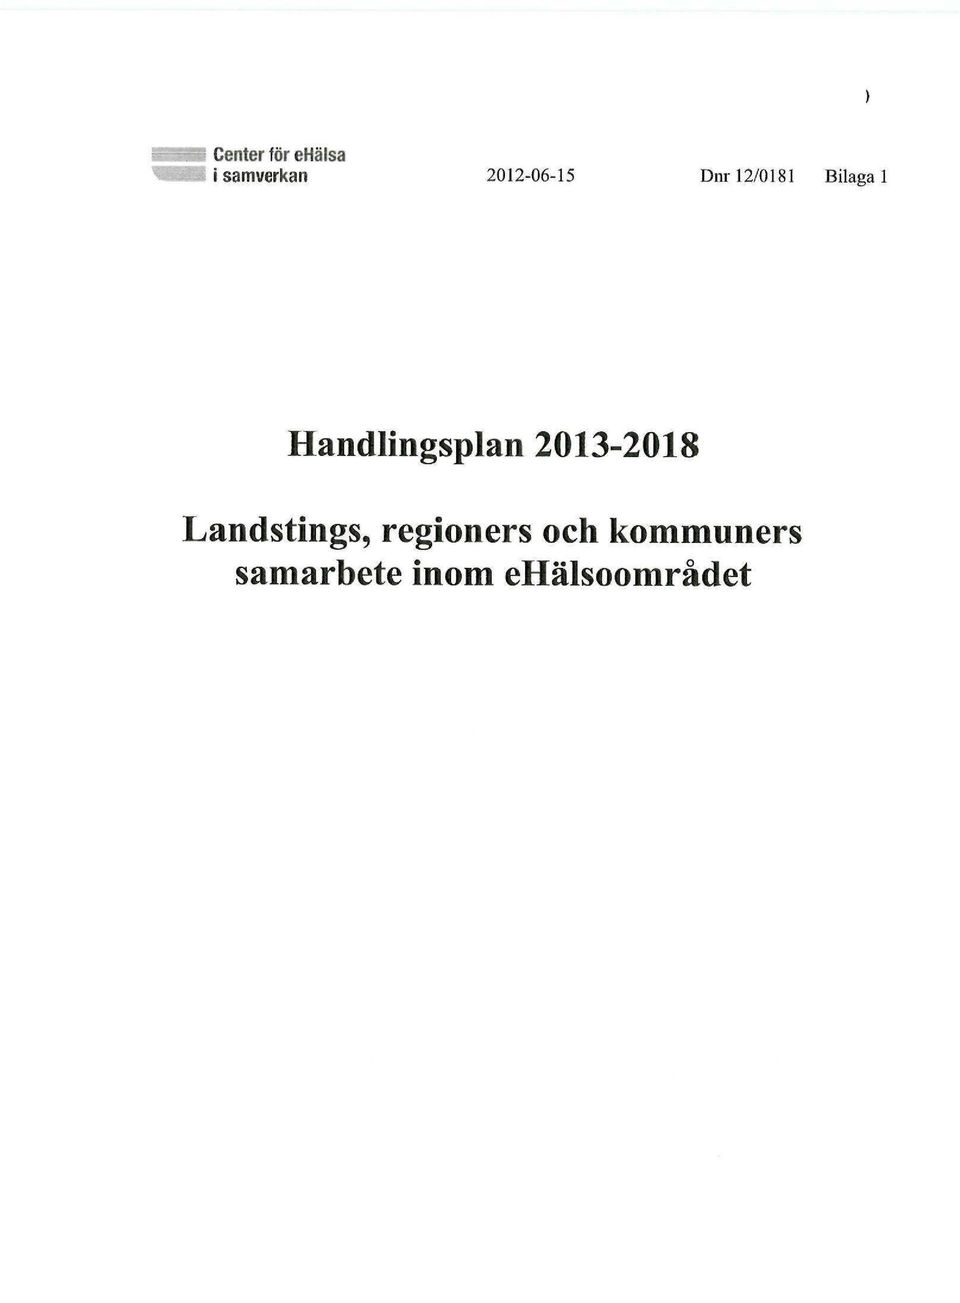 2013-2018 Landstings, regioners